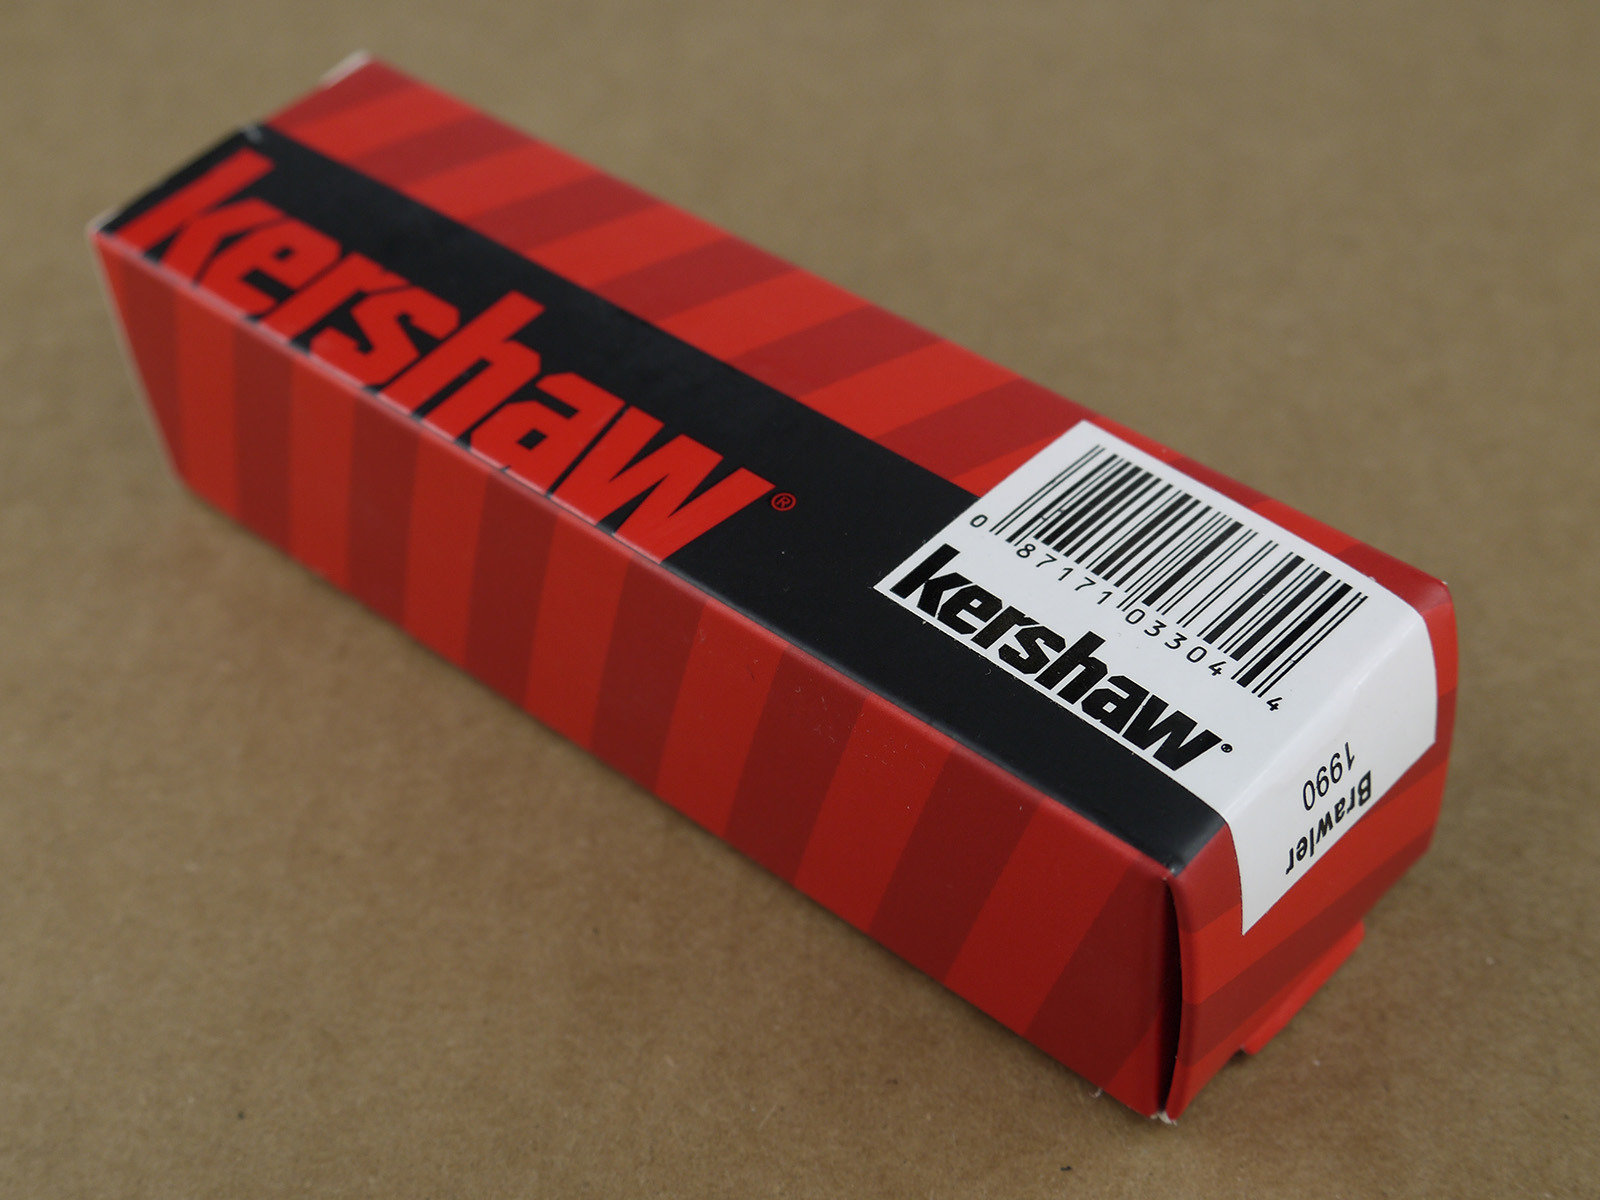 Kershaw 1990X Brawler SpeedSafe Knife ⋆ High Quality Watch Gallery